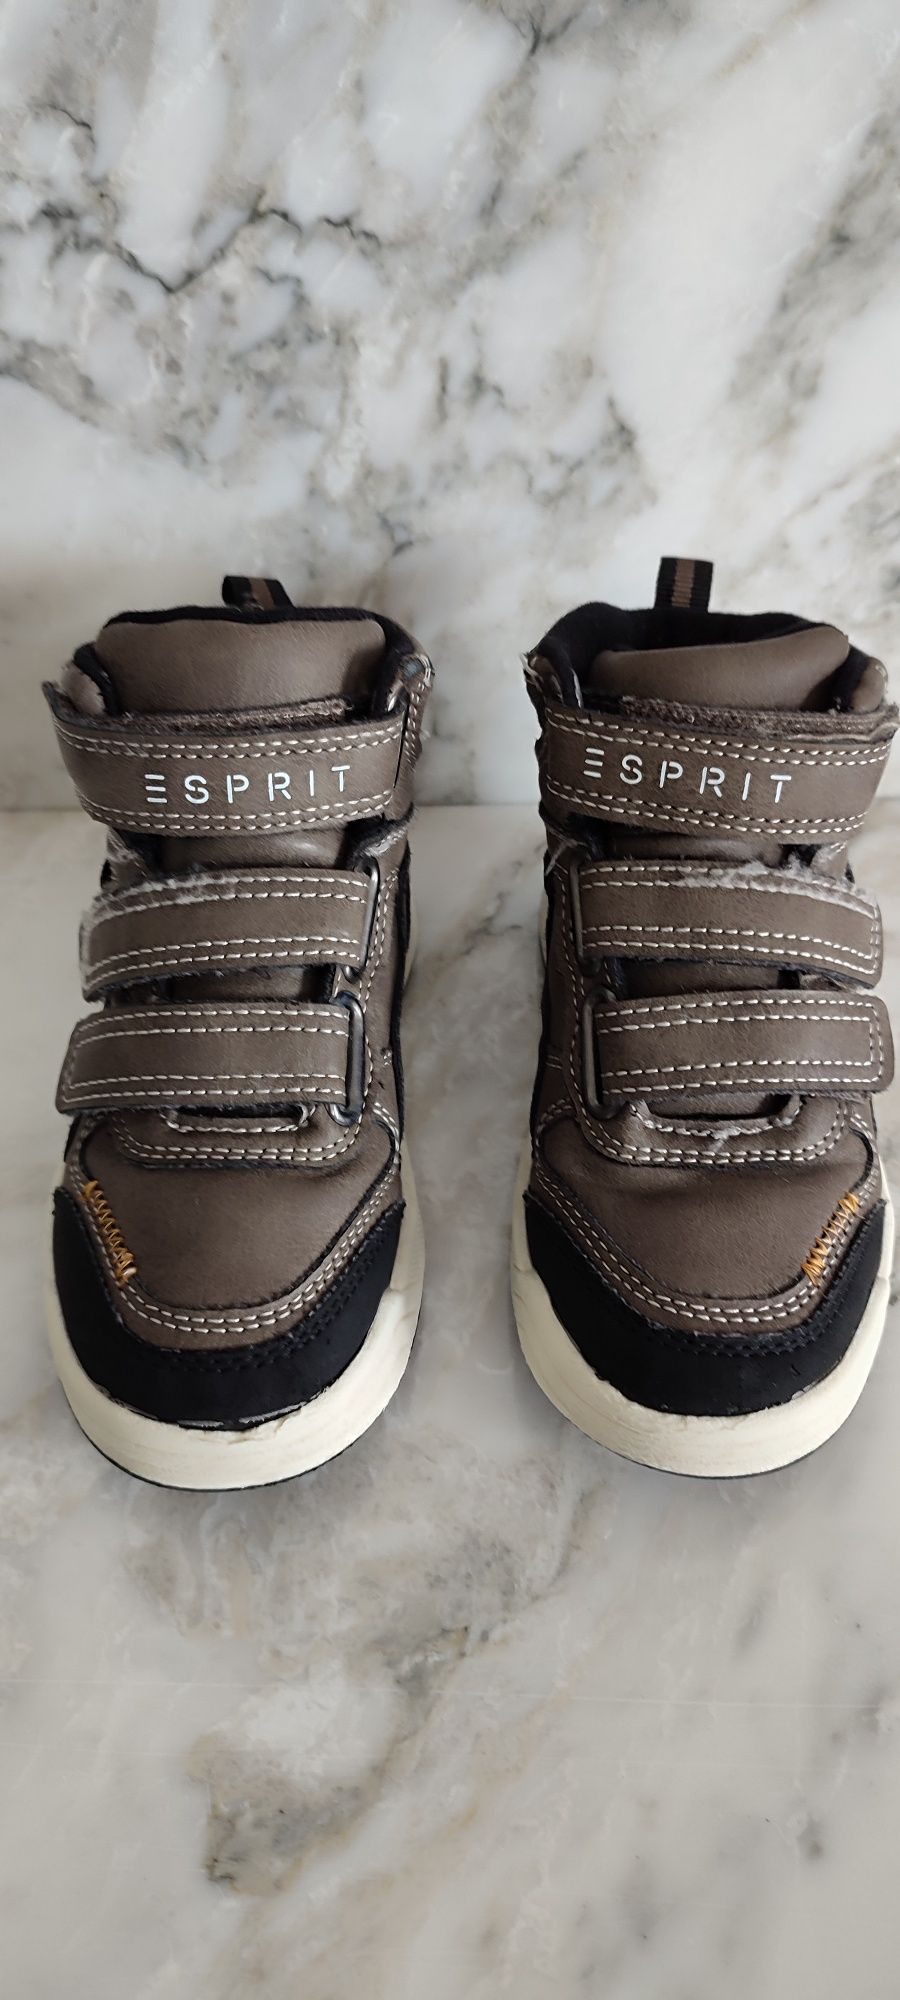 Buty wysokie / sneakersy / adidasy dziecięce Esprit r. 25